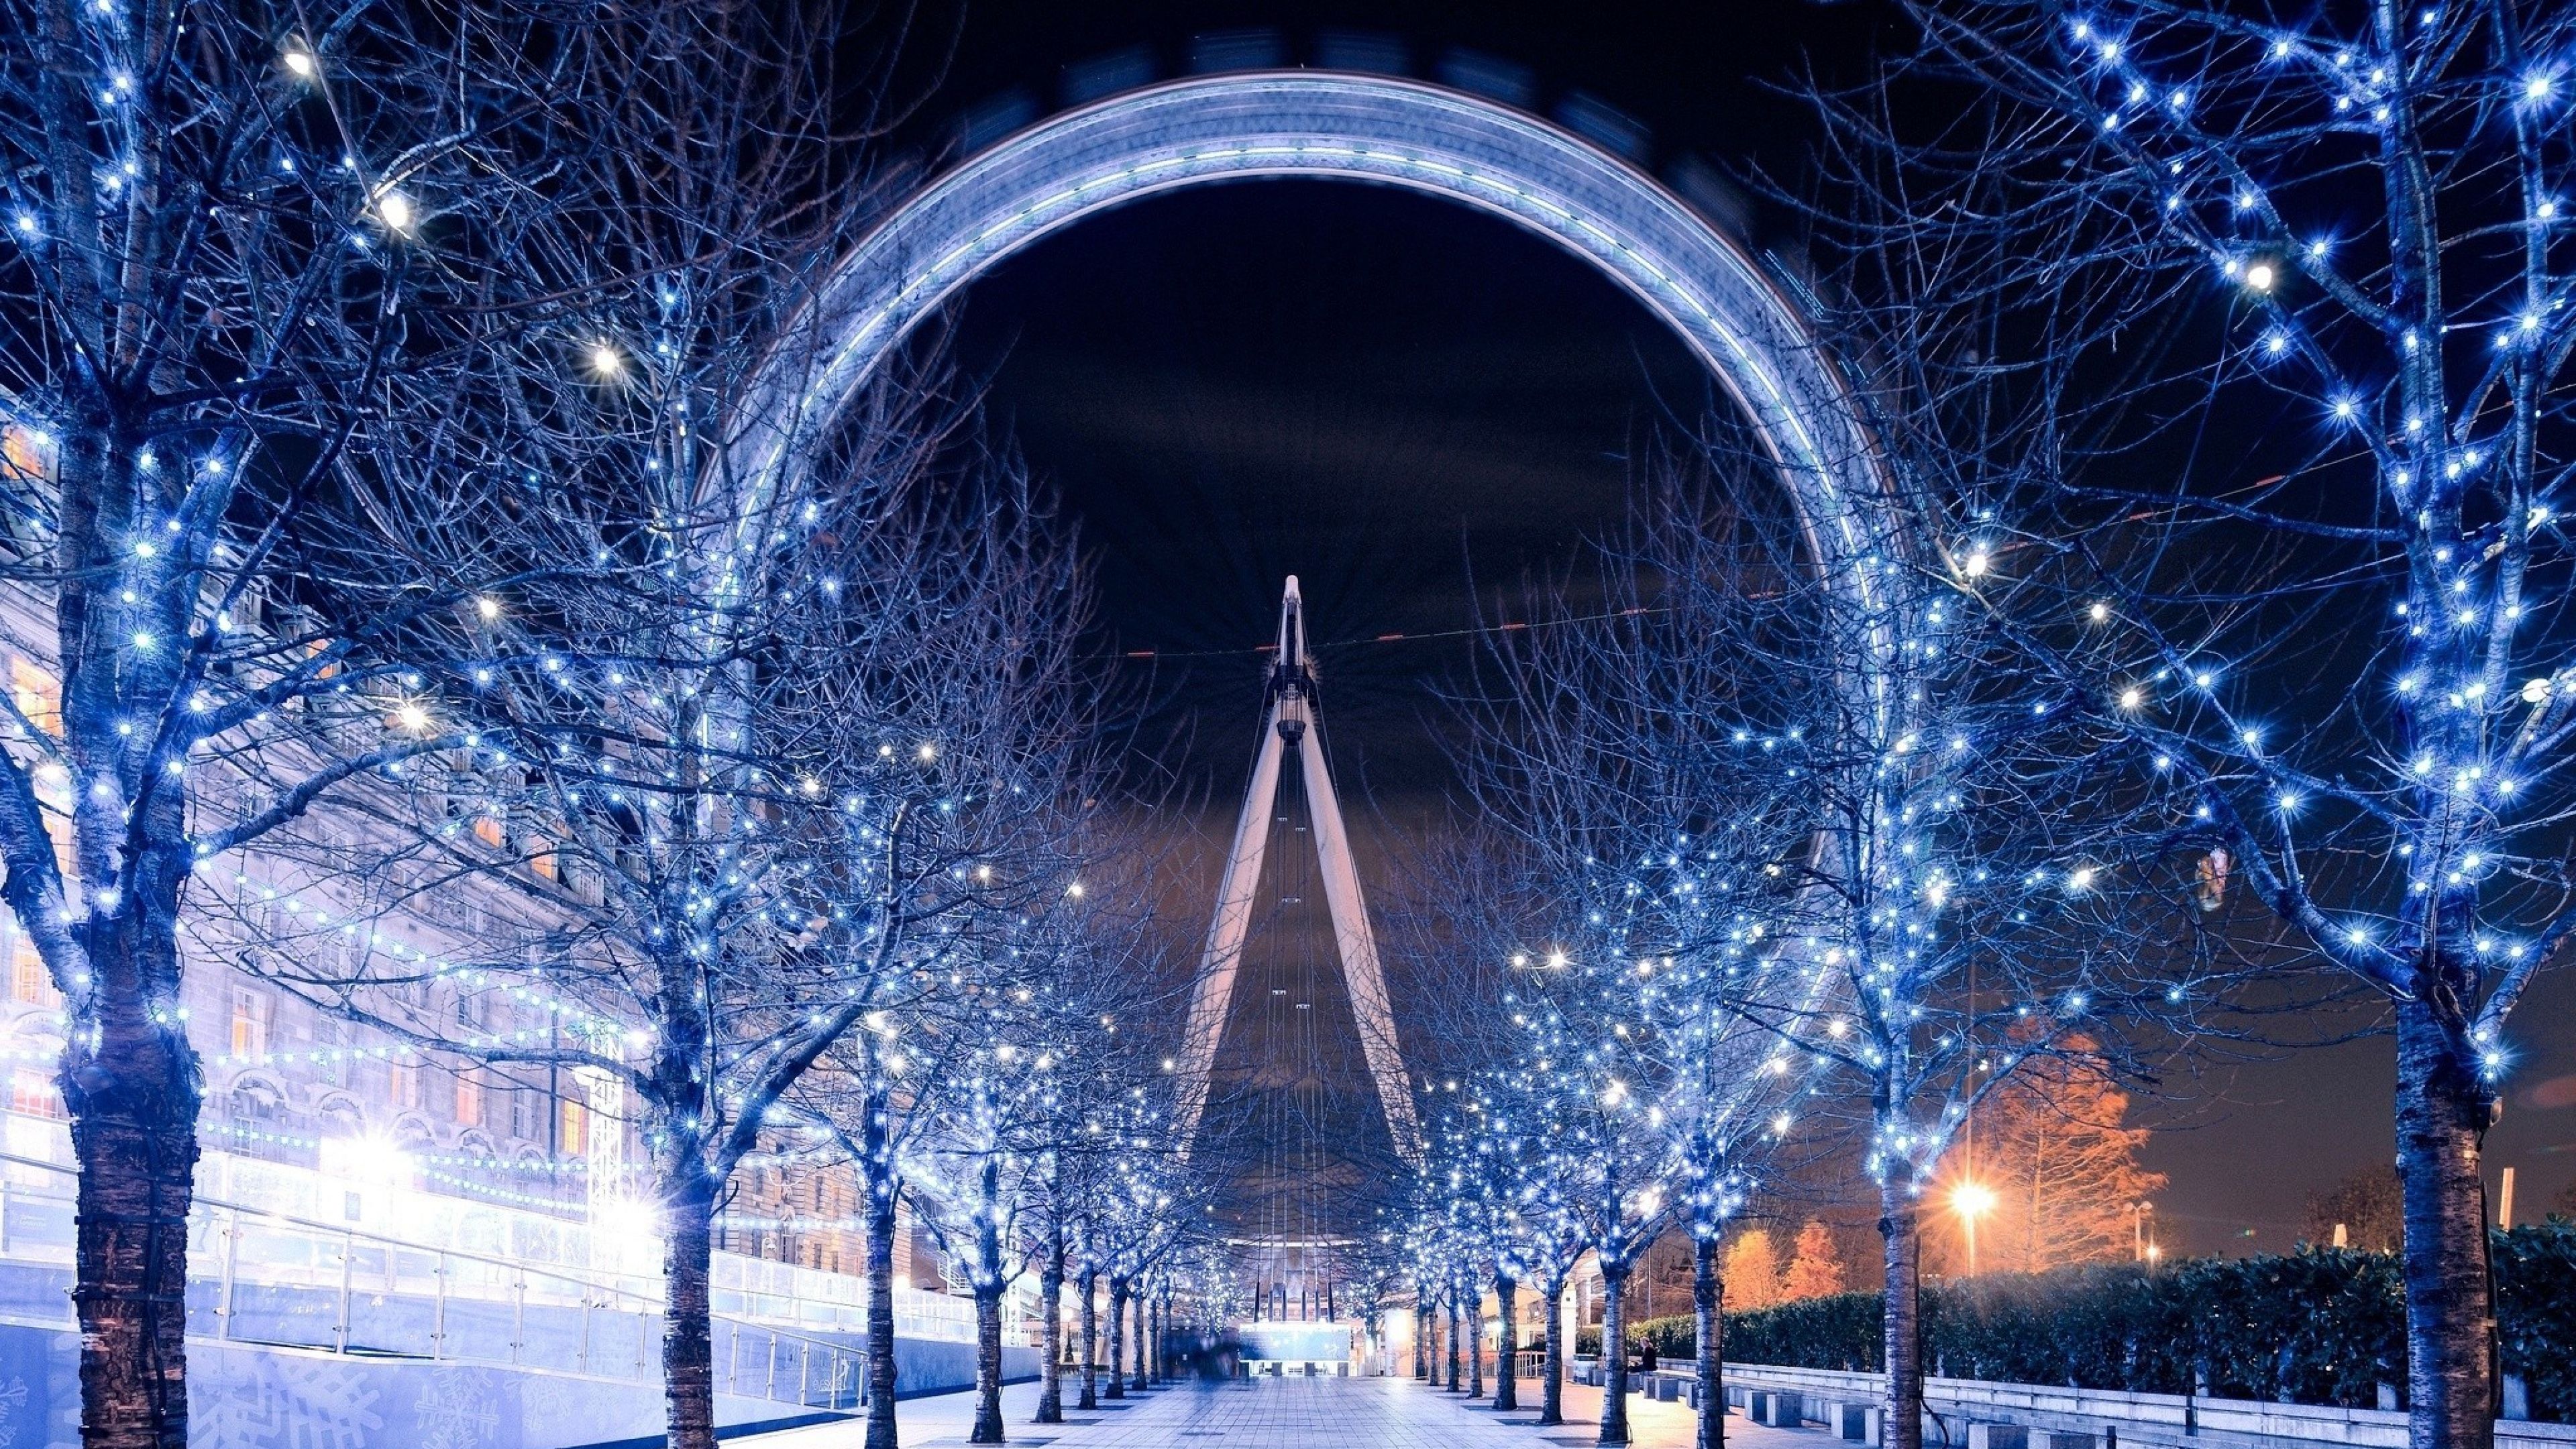 Ferris Wheel London, HD World, 4k Wallpaper, Image, Background